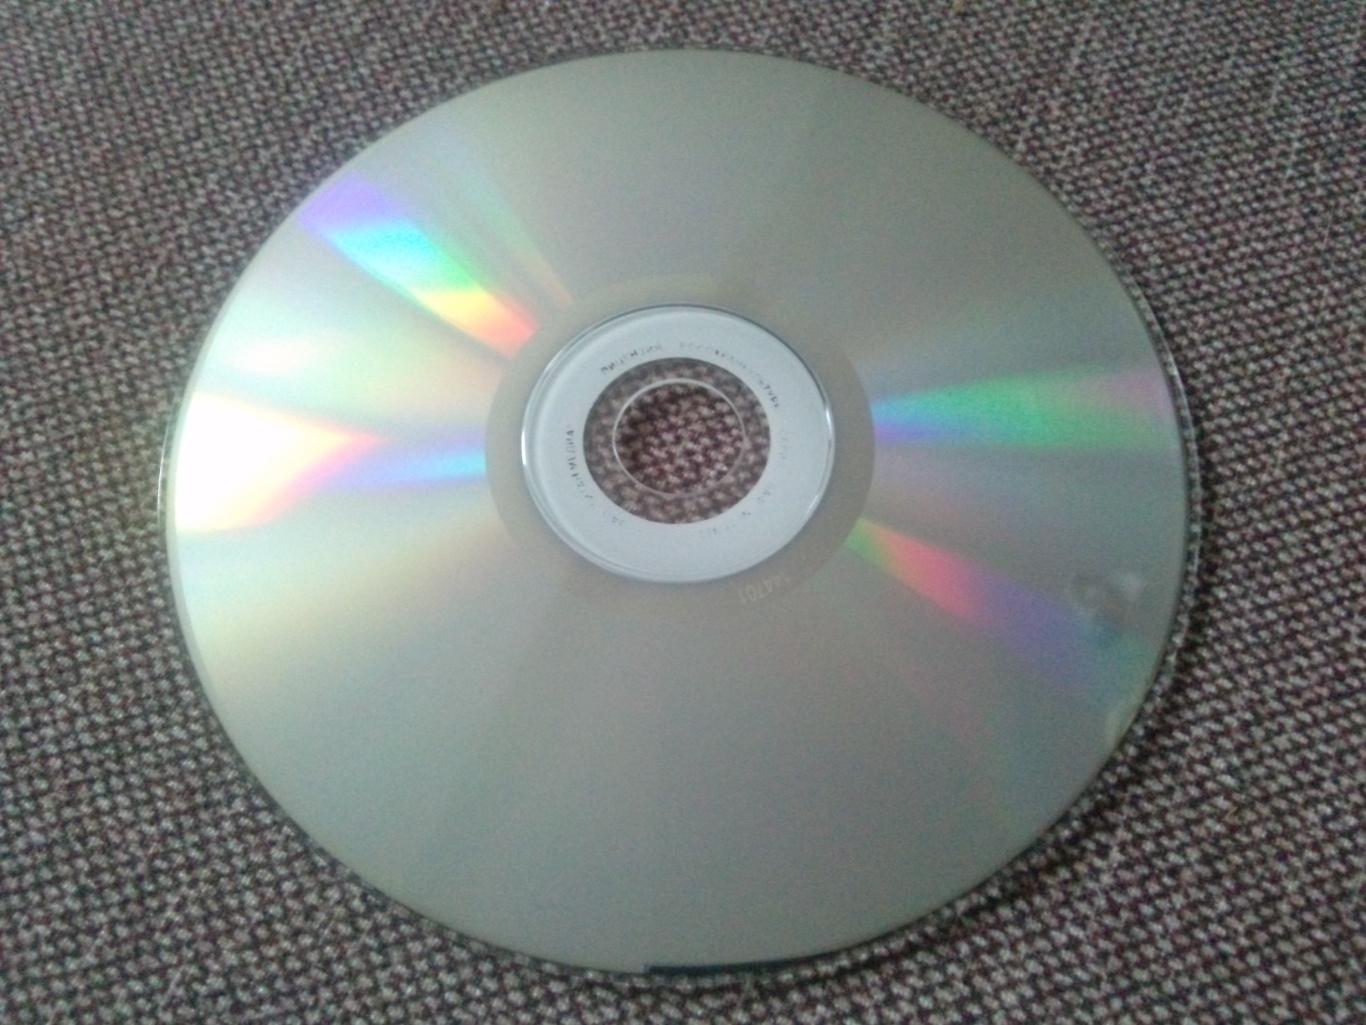 MP - 3 CD : группа Черный обелиск 1991 - 2012 гг. (13 альбомов) Русский рок 5